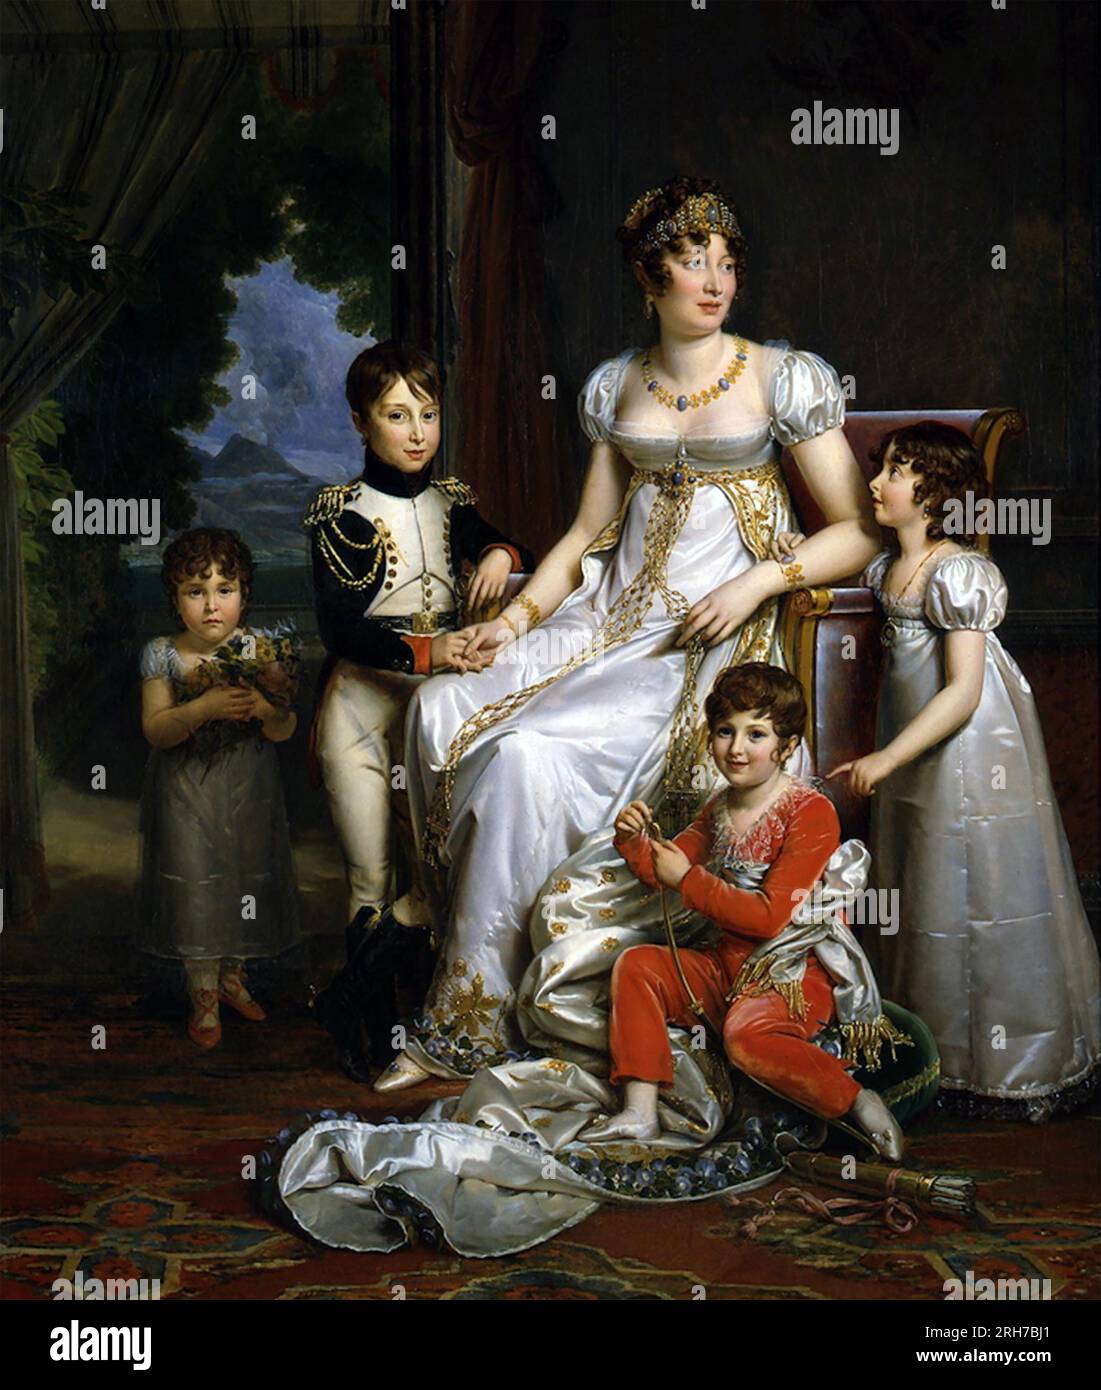 CAROLINA BONAPARTE (1782-1839), sorella minore di Napoleone con i suoi quattro figli, di Gioacchino Murat intorno al 1810 Foto Stock